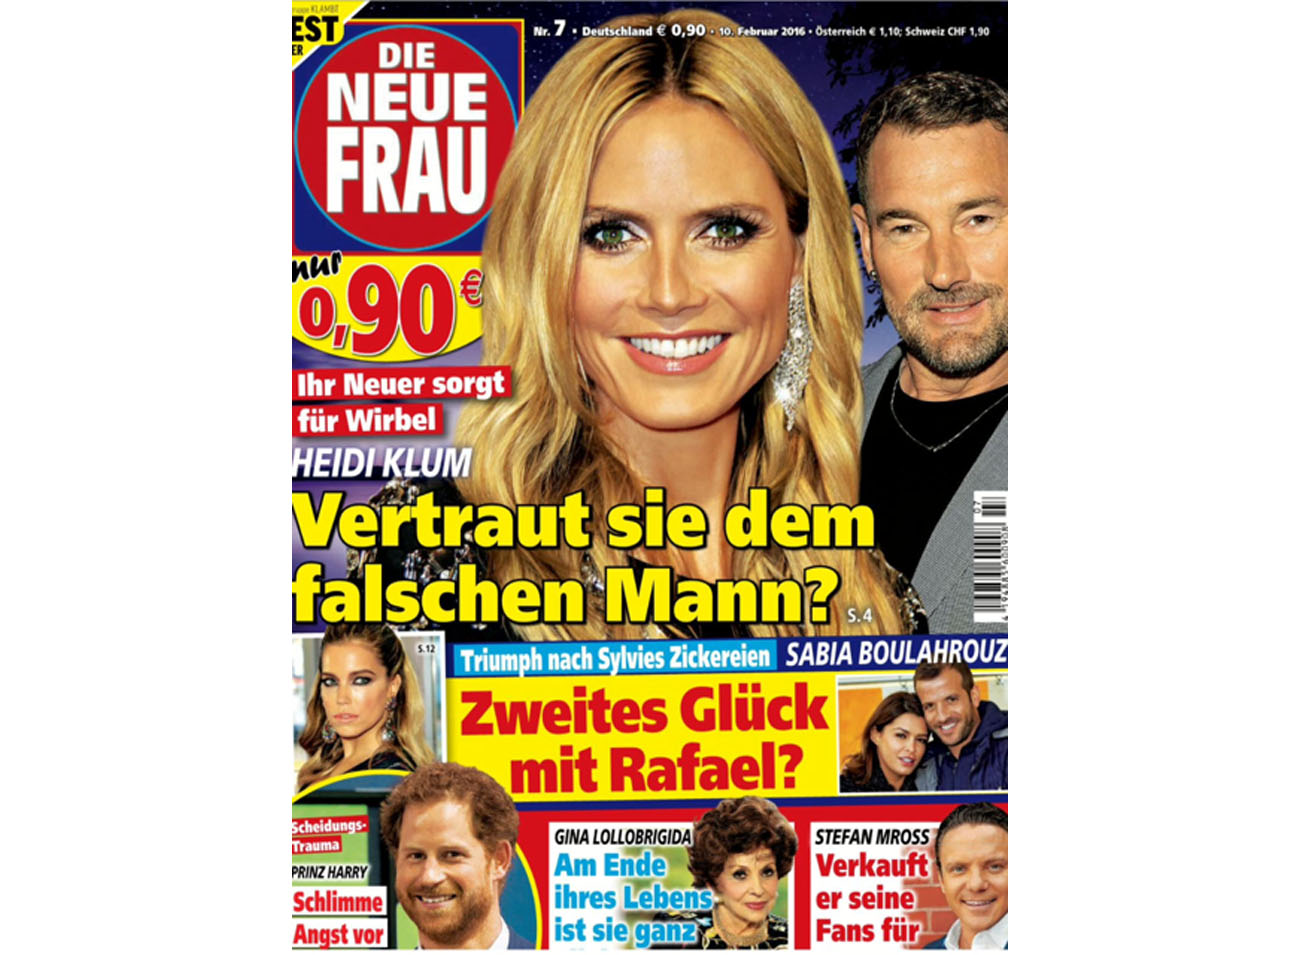 Die Neue Frau 10.02.2016 Cover